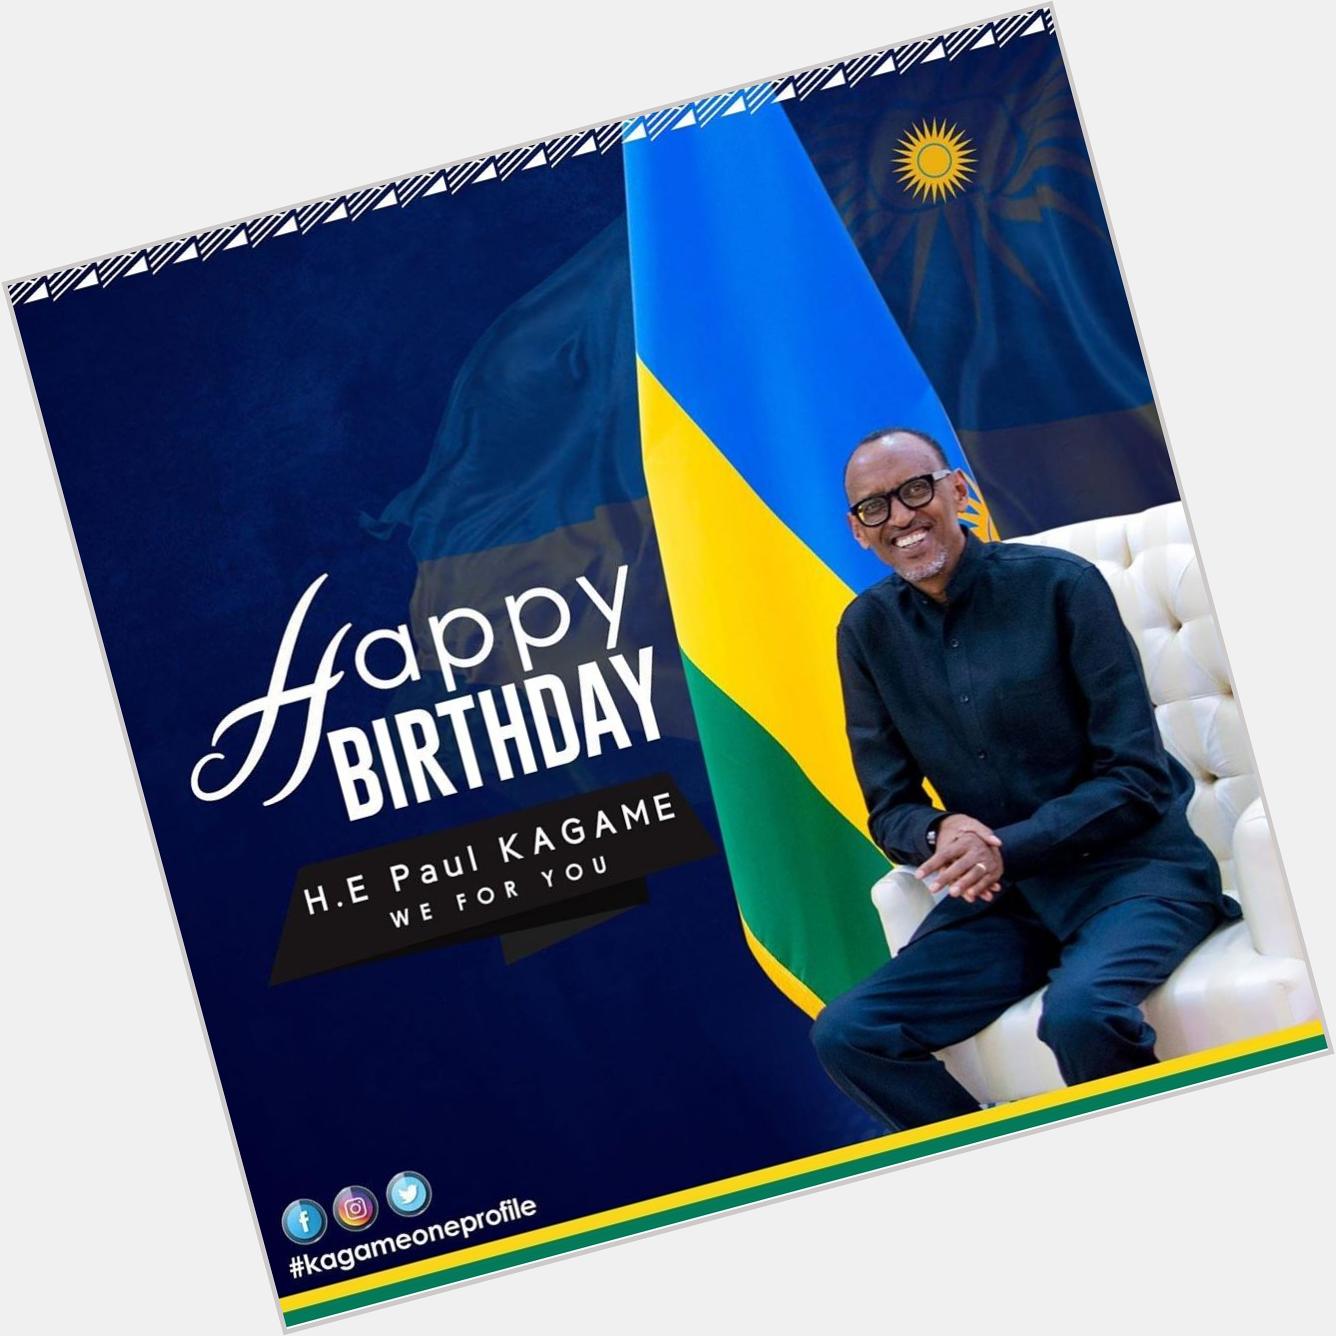 HAPPY BIRTHDAY TO YOU H.E kagame
I really Love you!
Komeza utsinde Umuturage ku isonga 